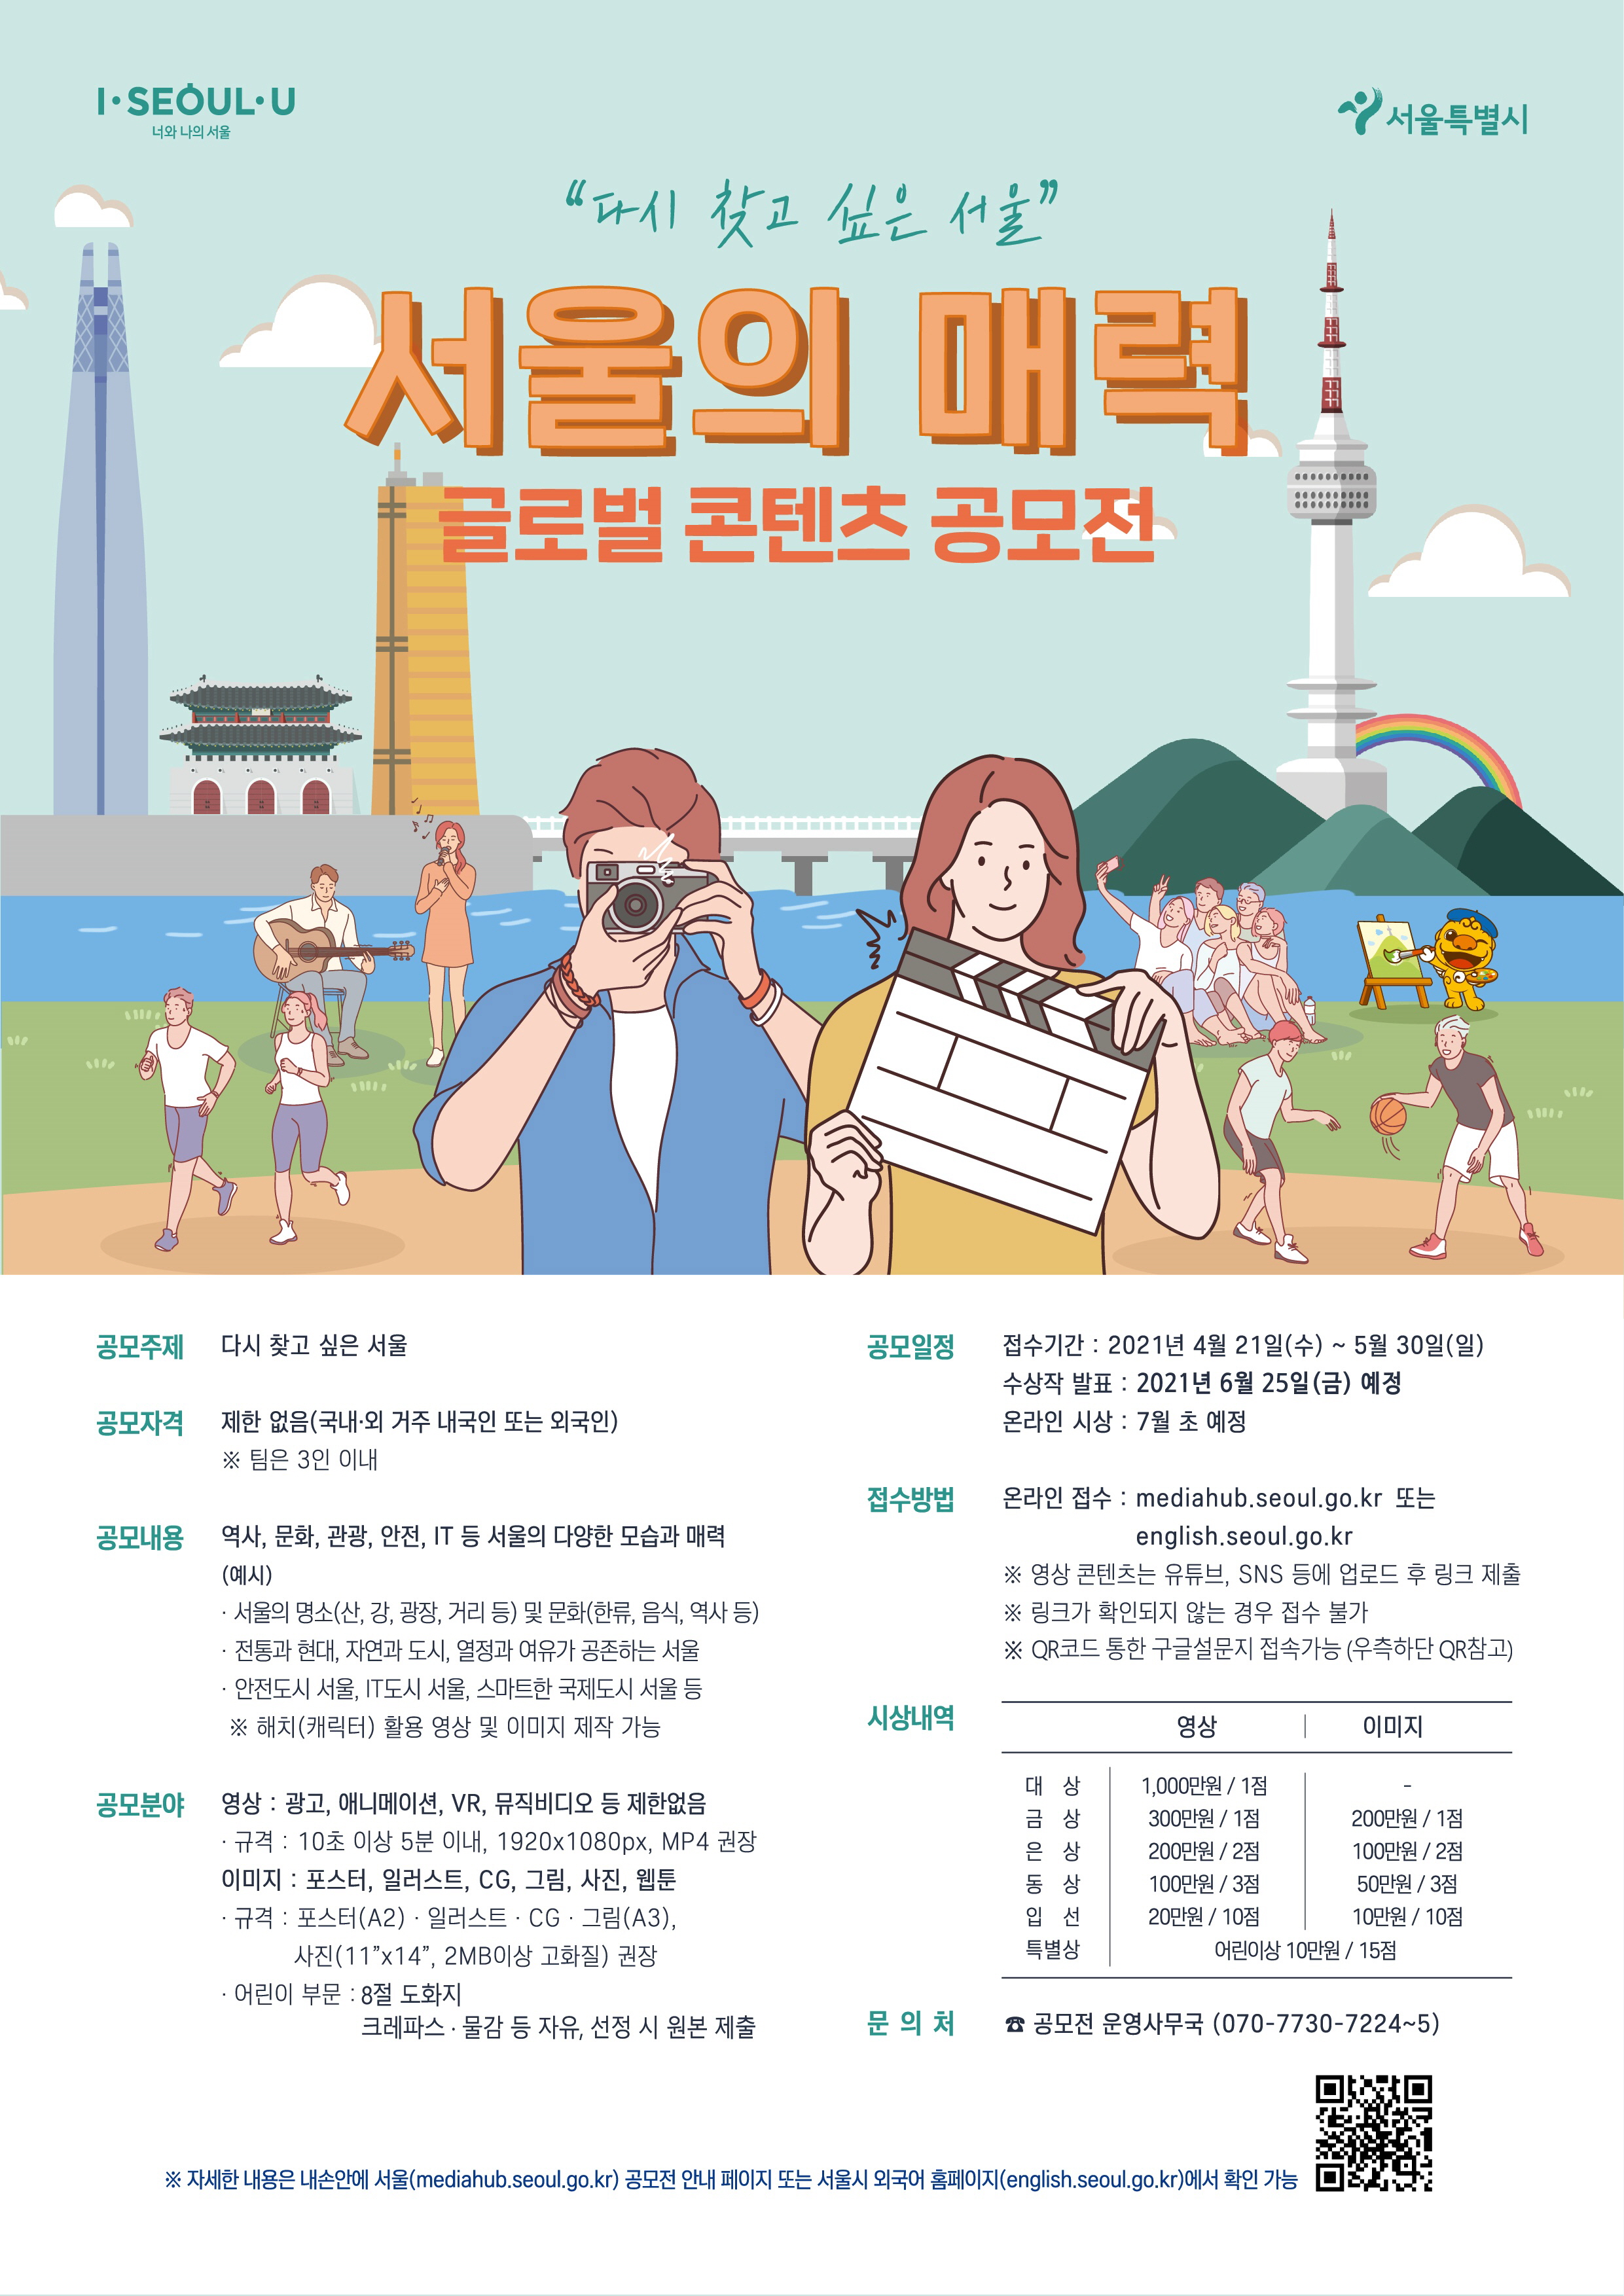 다시 찾고 싶은 서울 서울의 매력 글로벌 콘텐츠 공모전 접수기간 2021년 4월 21일부터 5월 30일까지 